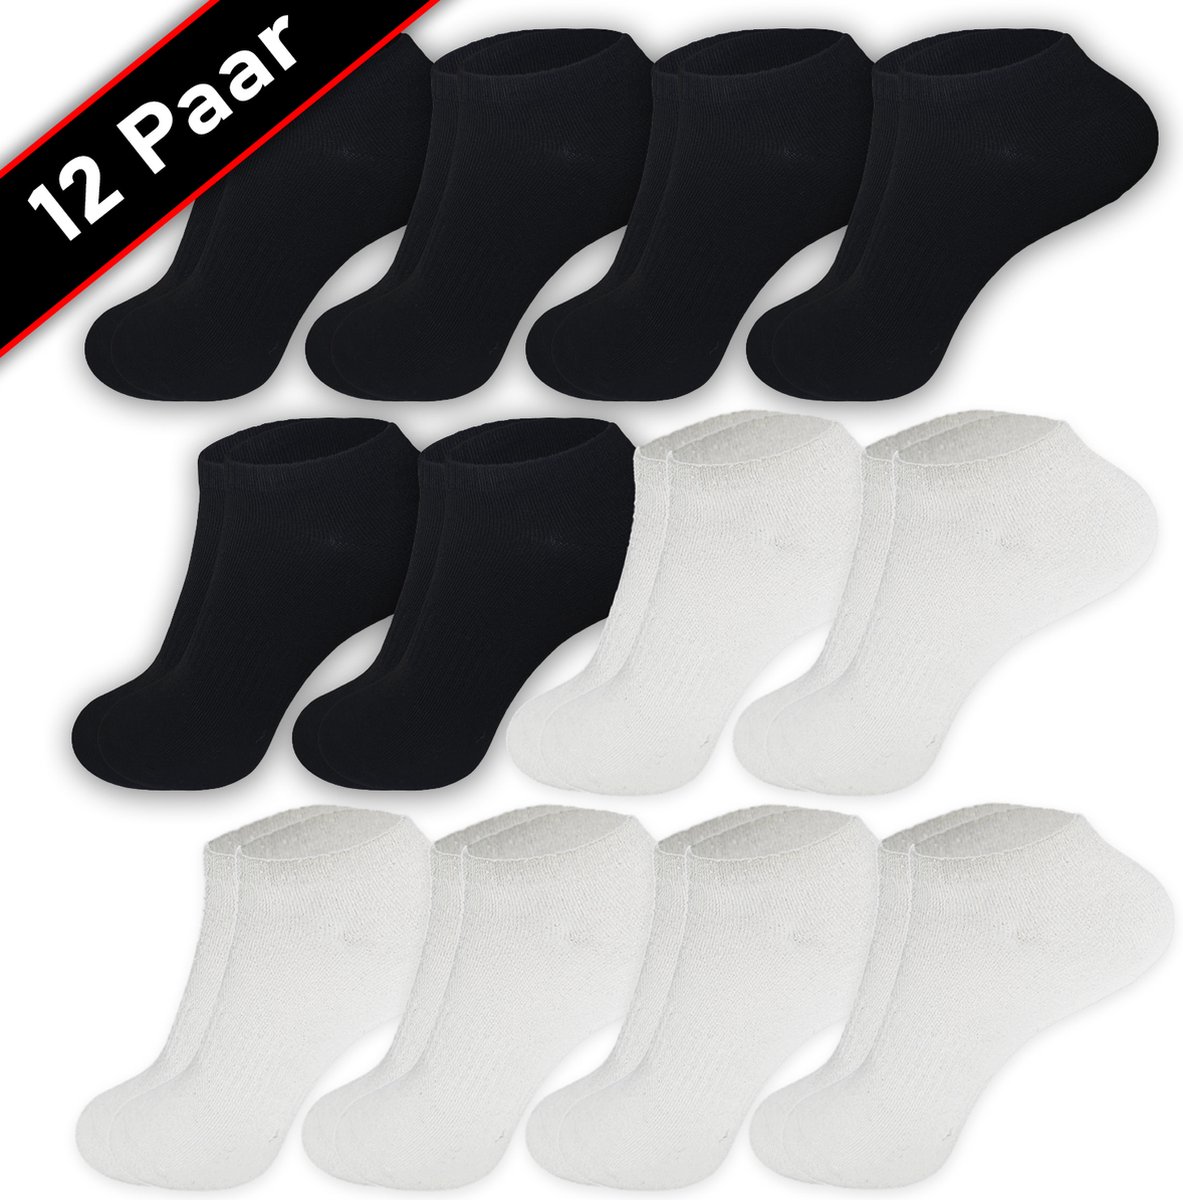 Blacktag - Enkelsokken - Sokken - Sneakersokken - Maat 41/45 - 12 Paar - Zwart en Wit – Katoen